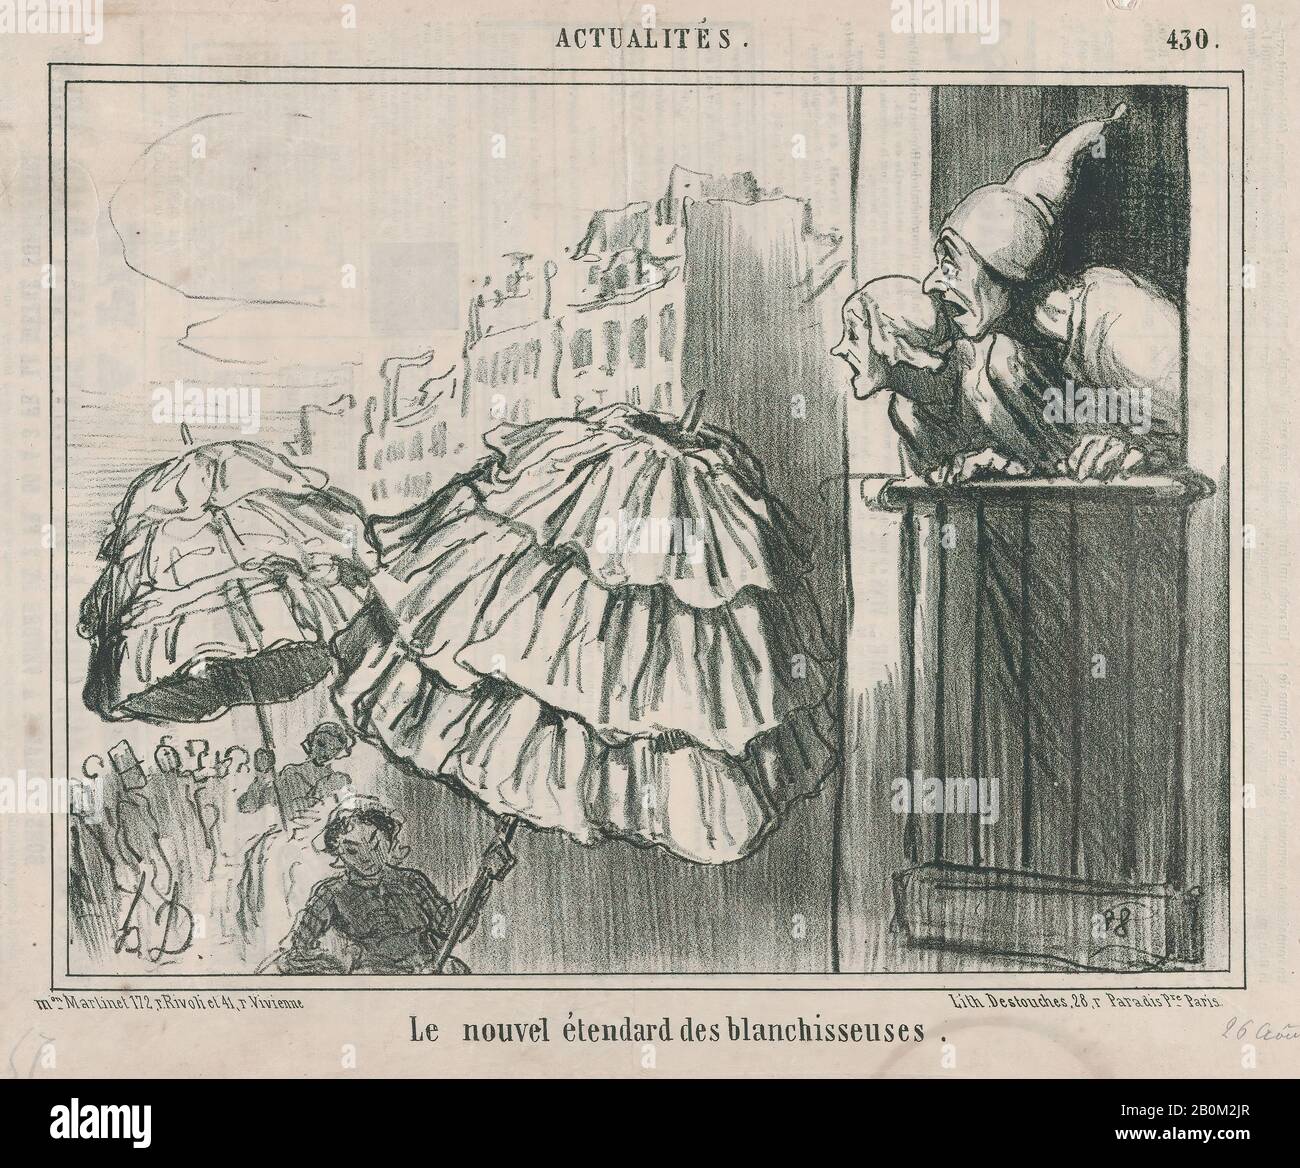 Honoré Daumier, le nouvel étendard des blanchisseuses, da Actualités, pubblicato in le Charivari, 26 agosto 1857, Actualités, Honoré Daumier (francese, Marsiglia 1808–1879 Valmondois), 26 agosto 1857, litografia su carta da giornale; secondo stato di due (Delteil 1/4), foglio: 13/16 ×. (26,1 × 37,6 cm), immagine: 8 1/4 × 10 11/16 in. (20,9 × 27,2 cm), stampe Foto Stock